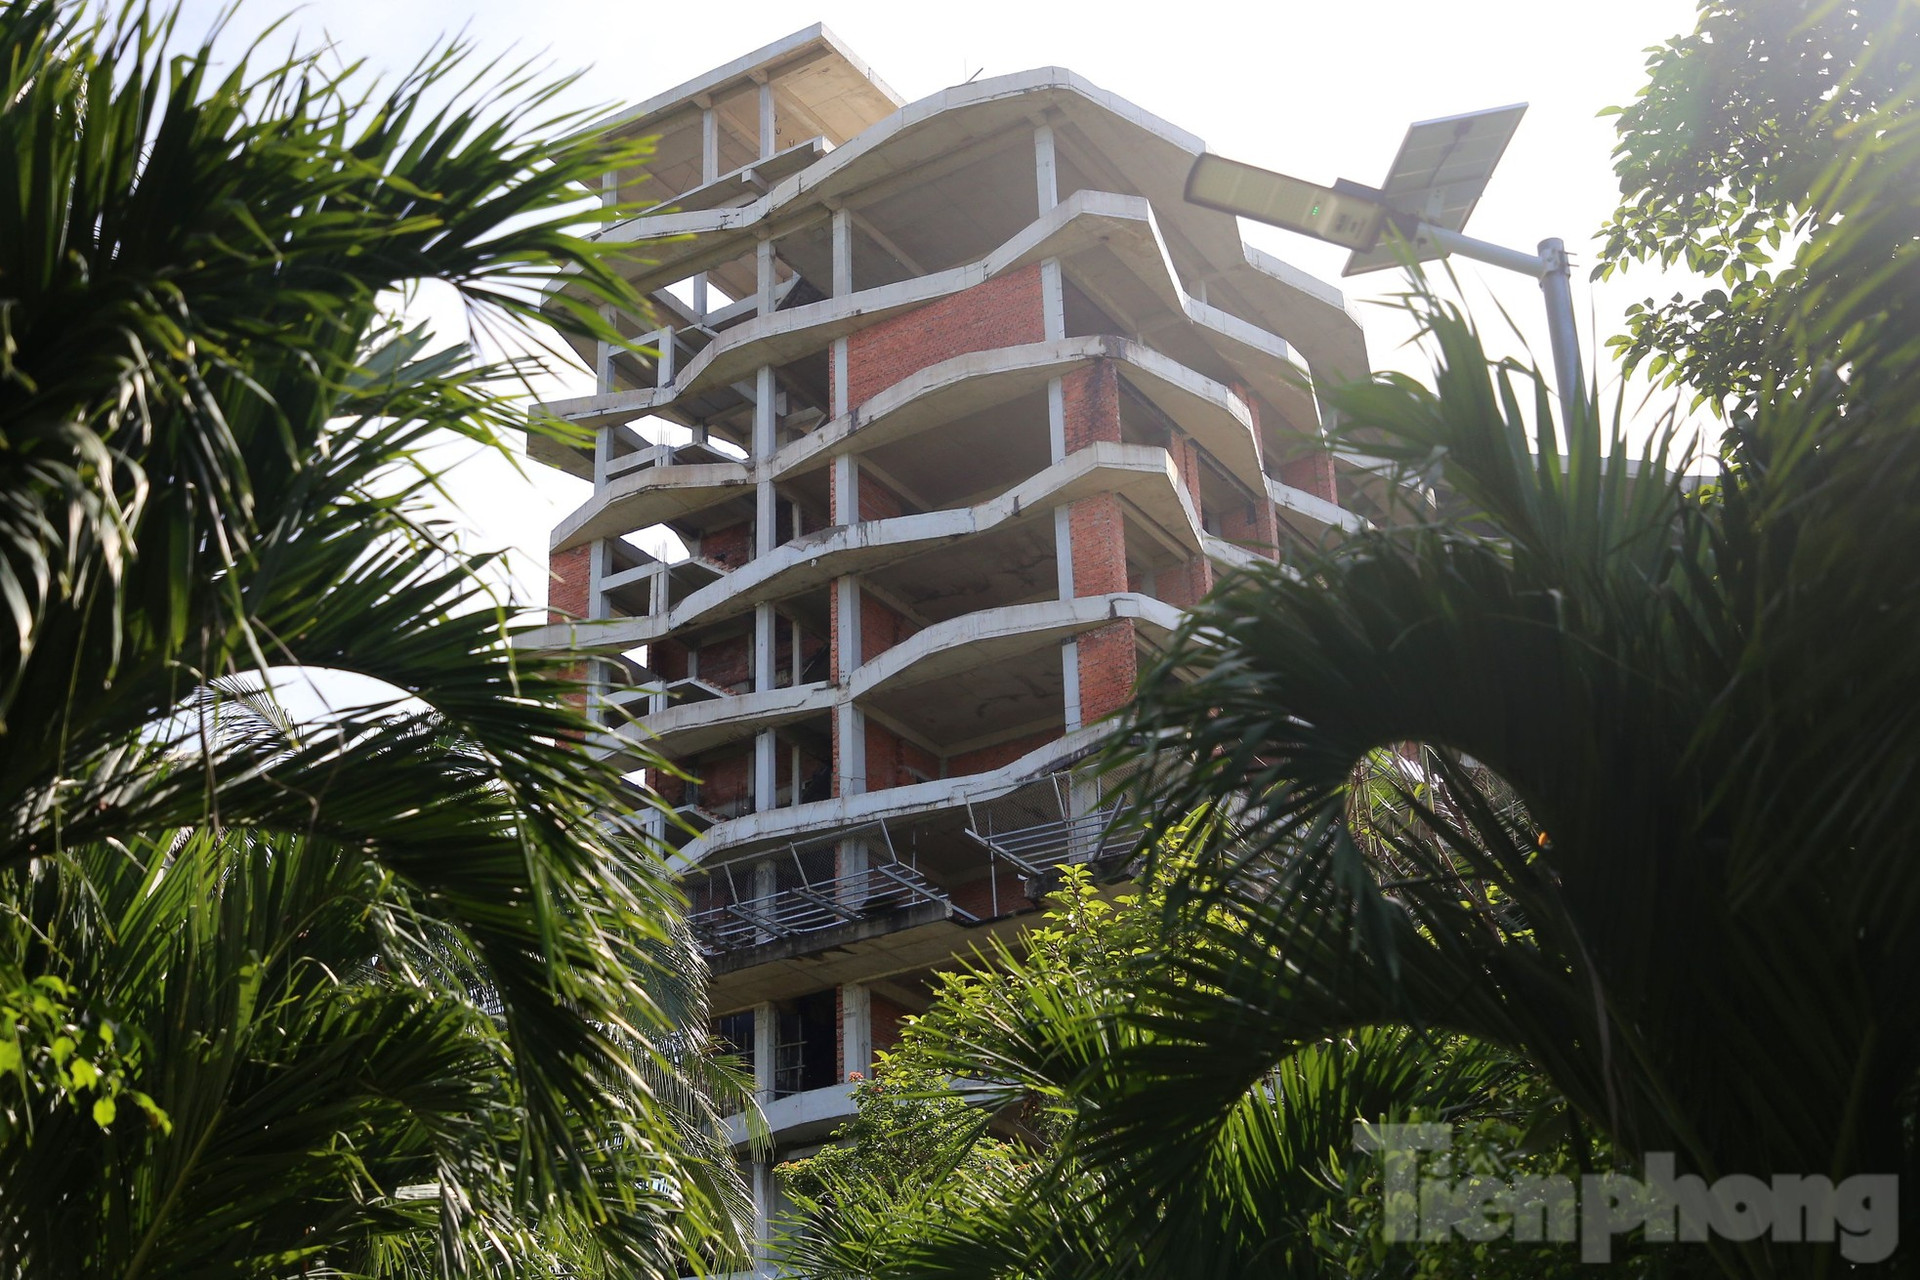 Tiết lộ lý do chưa cưỡng chế khách sạn 12 tầng xây trái phép ở Phú Quốc ảnh 2